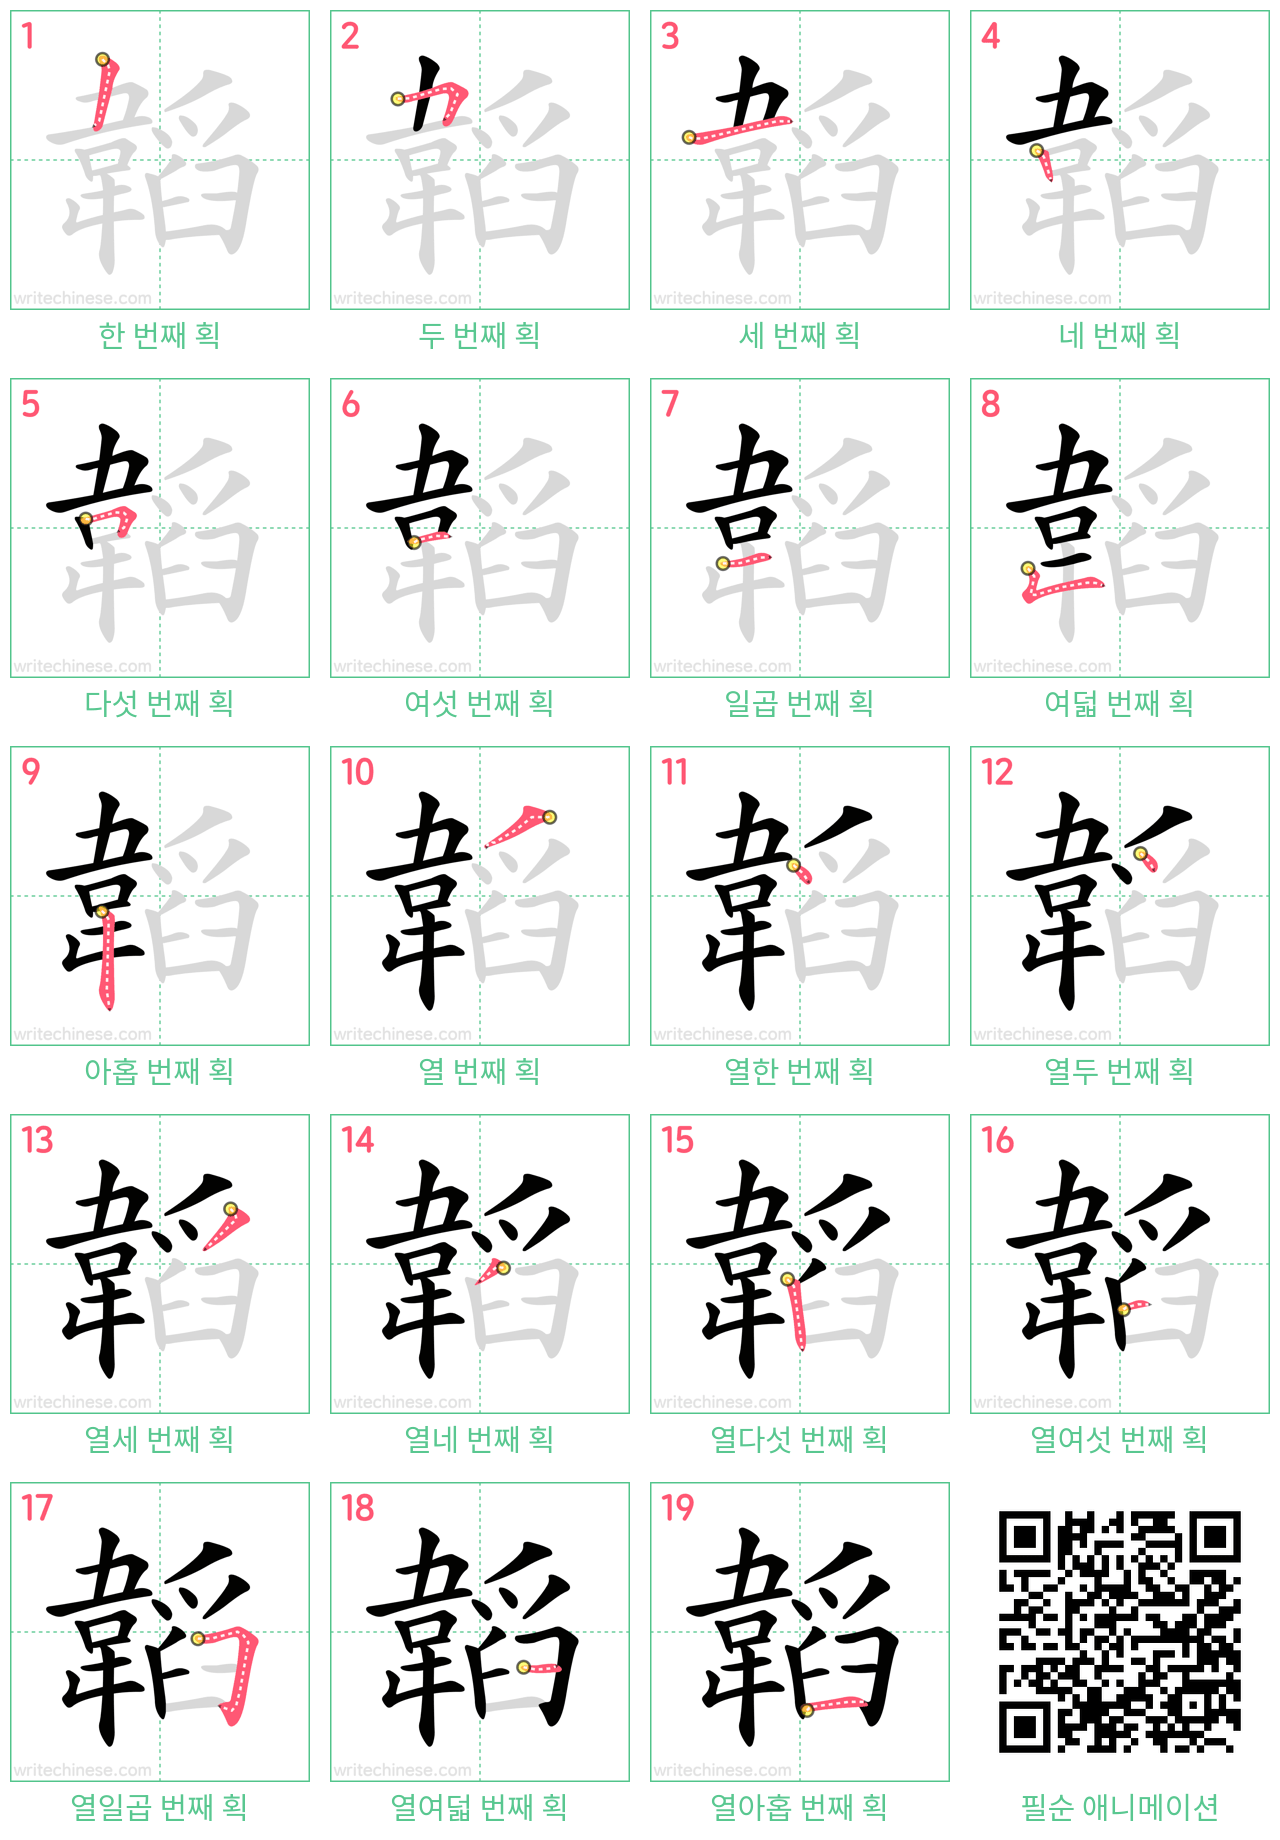 韜 step-by-step stroke order diagrams